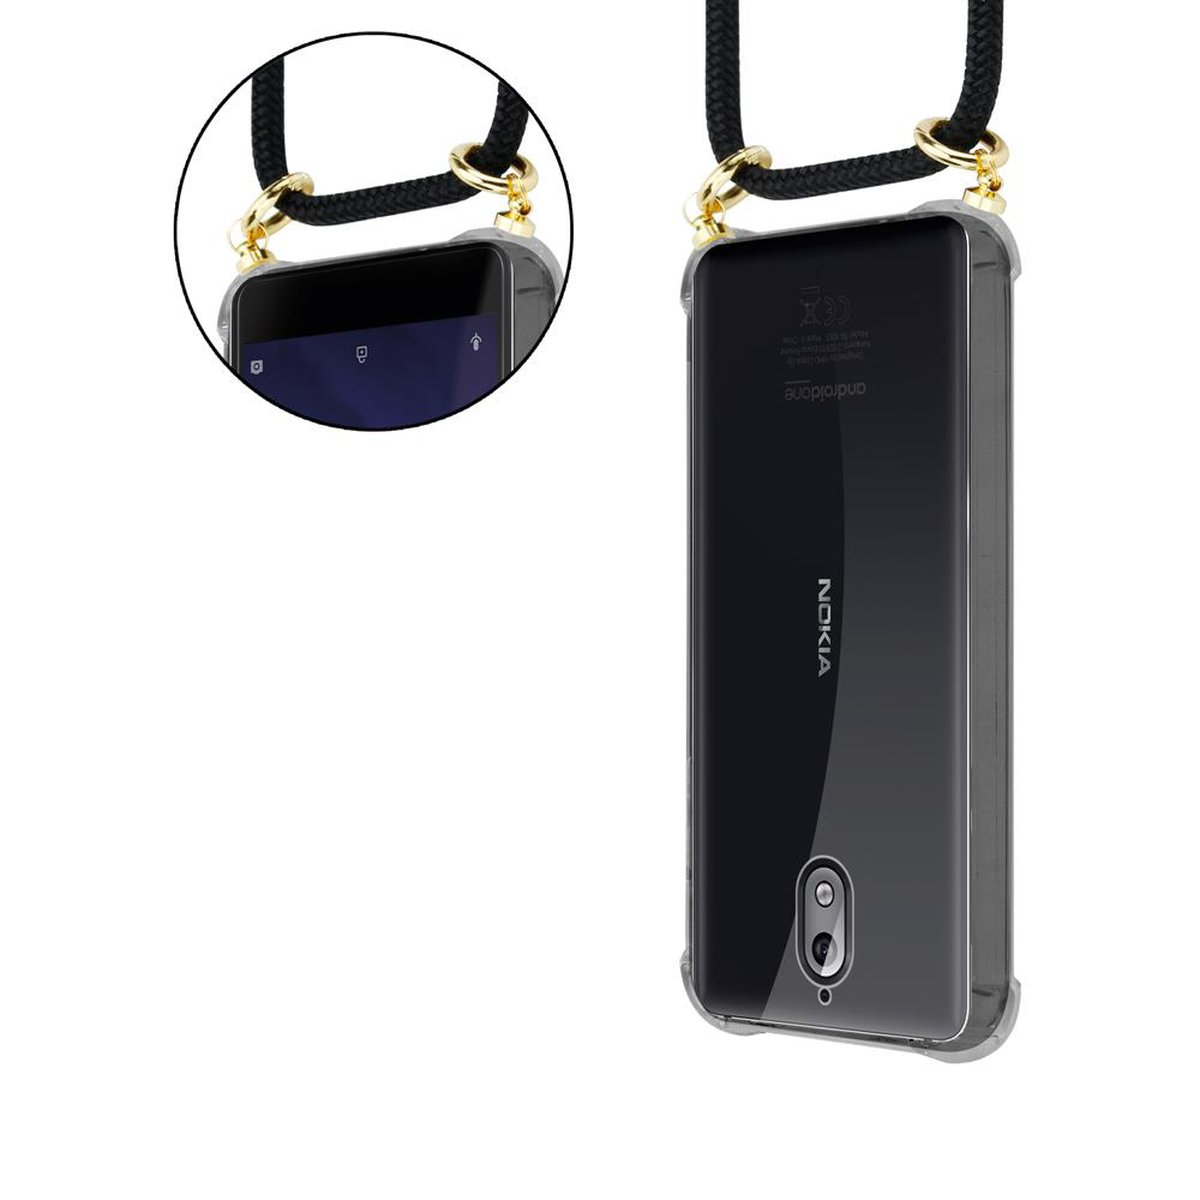 CADORABO Handy und Gold abnehmbarer SCHWARZ Nokia, mit 3.1, Backcover, Kette Kordel Ringen, Band Hülle